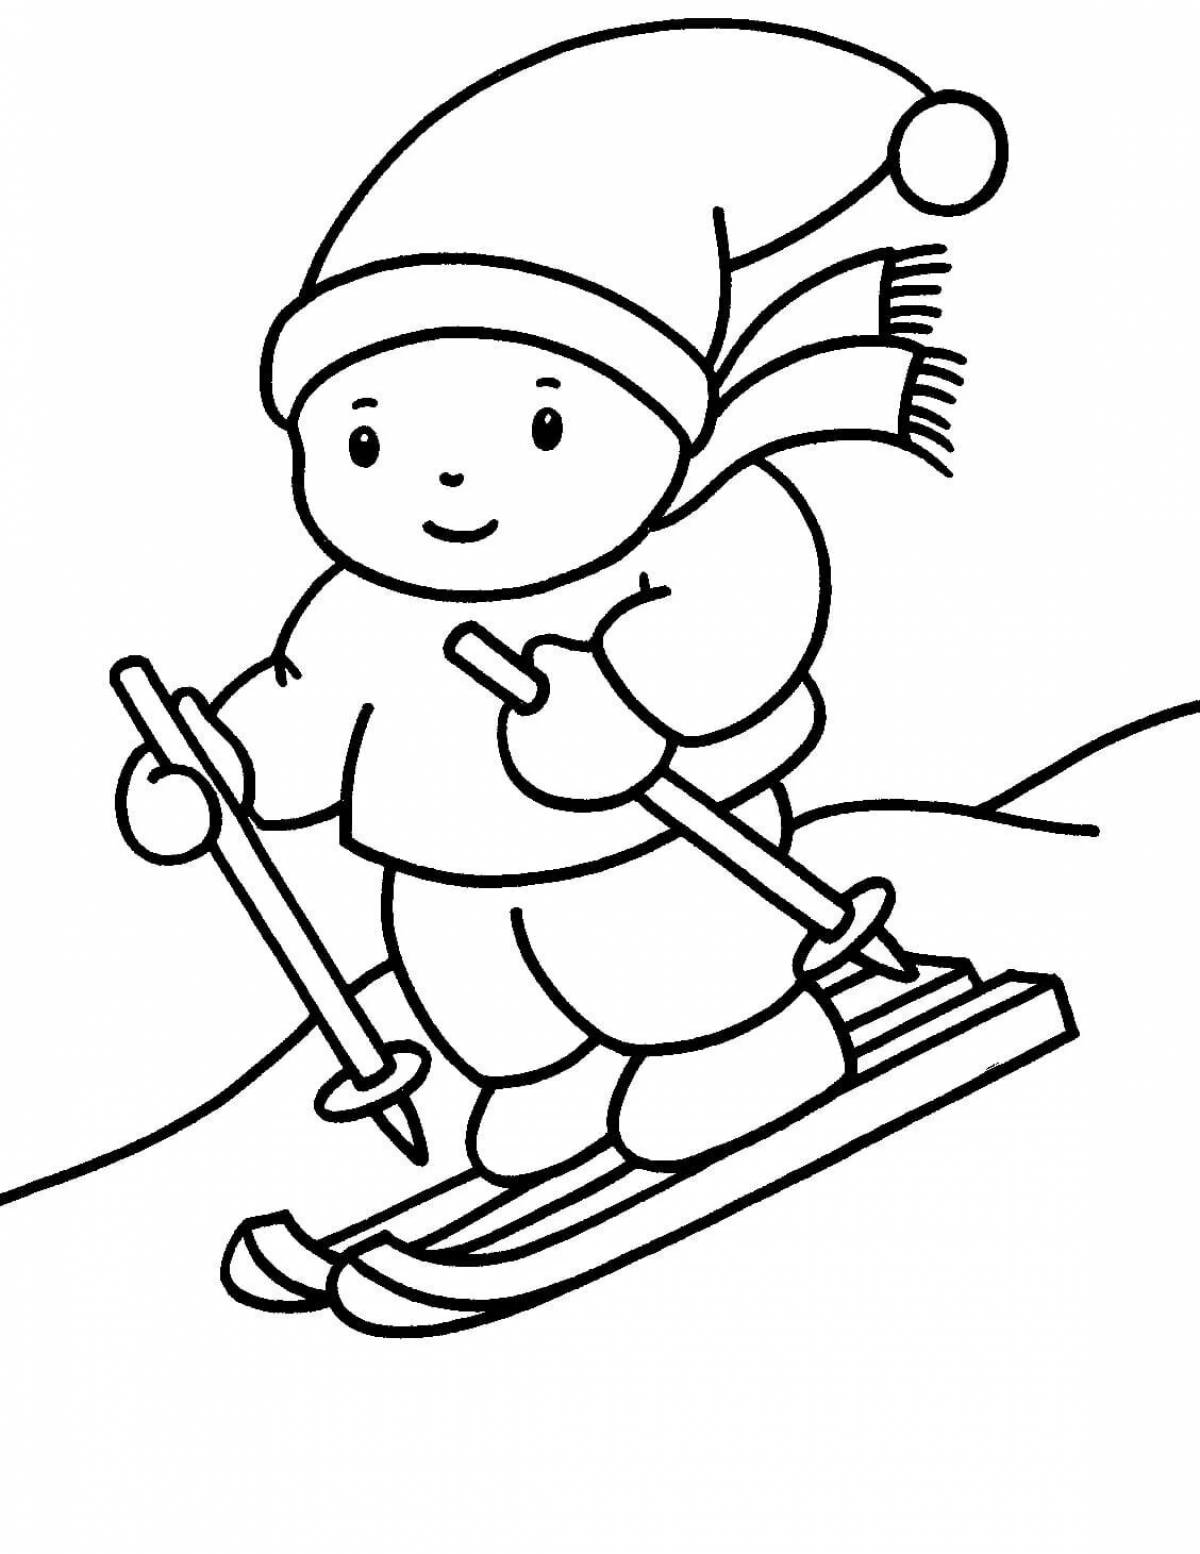 Увлекательная раскраска лыжника для самых маленьких